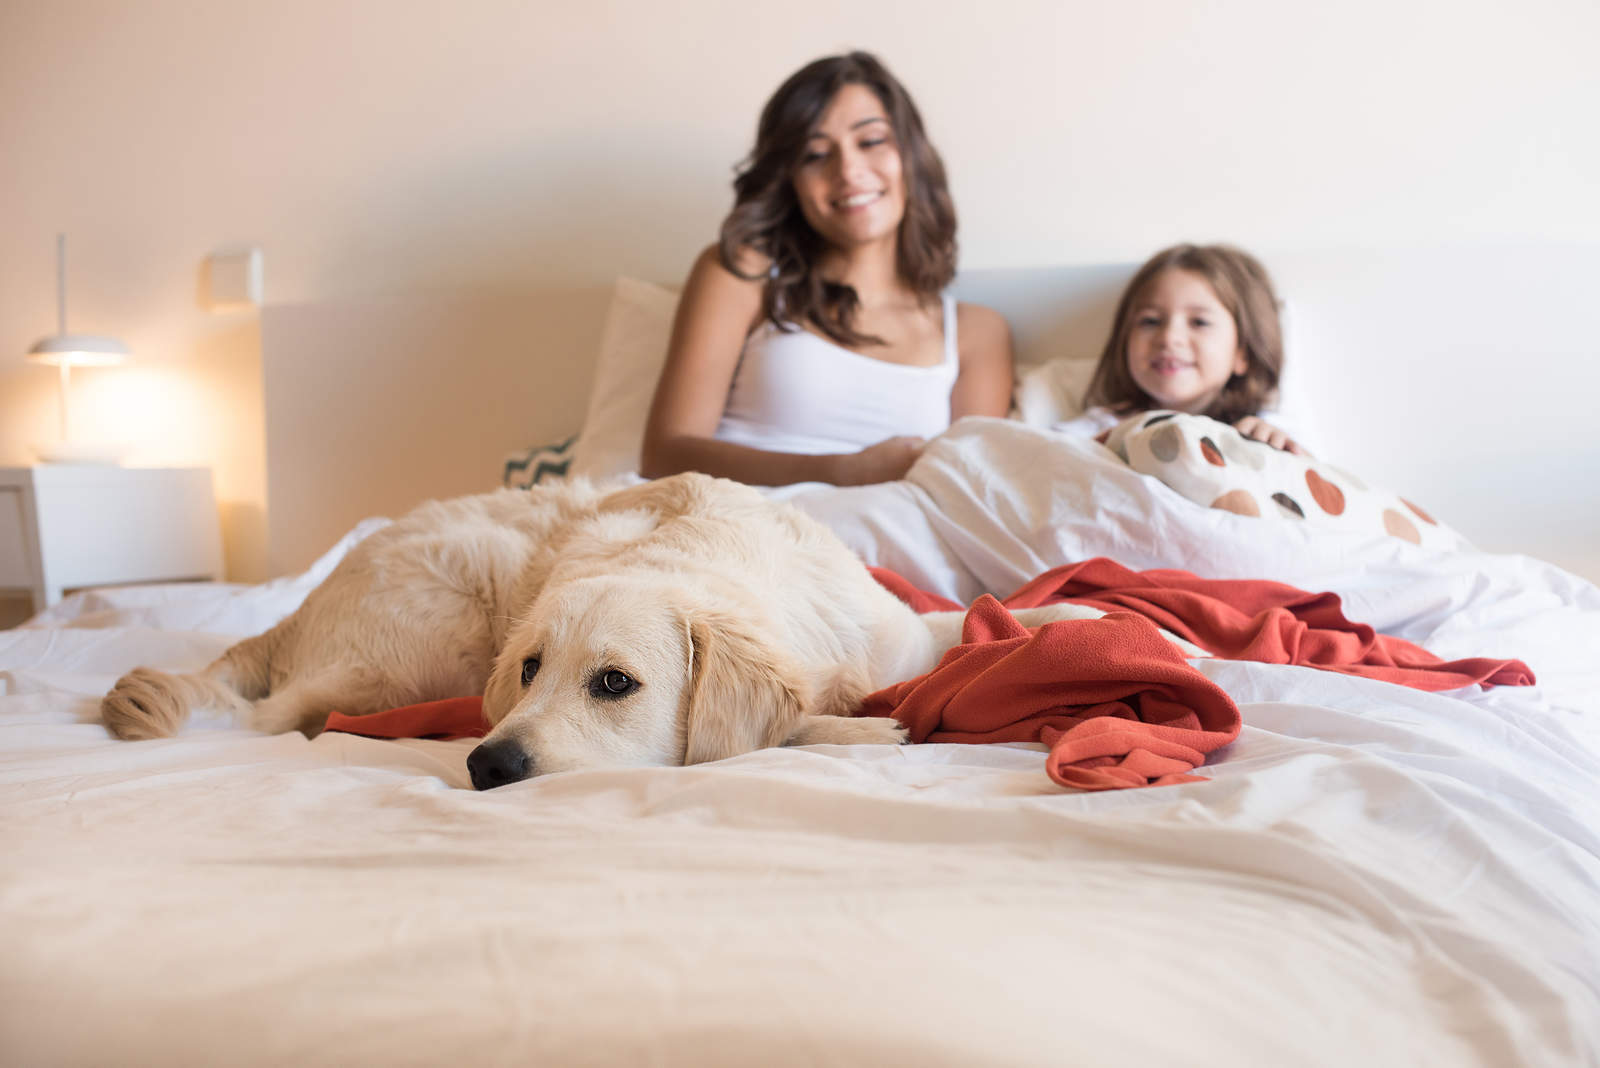 Un estudio de calidad de sueño reveló que dormir con los perros es más placentero que dormir con la pareja o un gato. (ARCHIVO)

